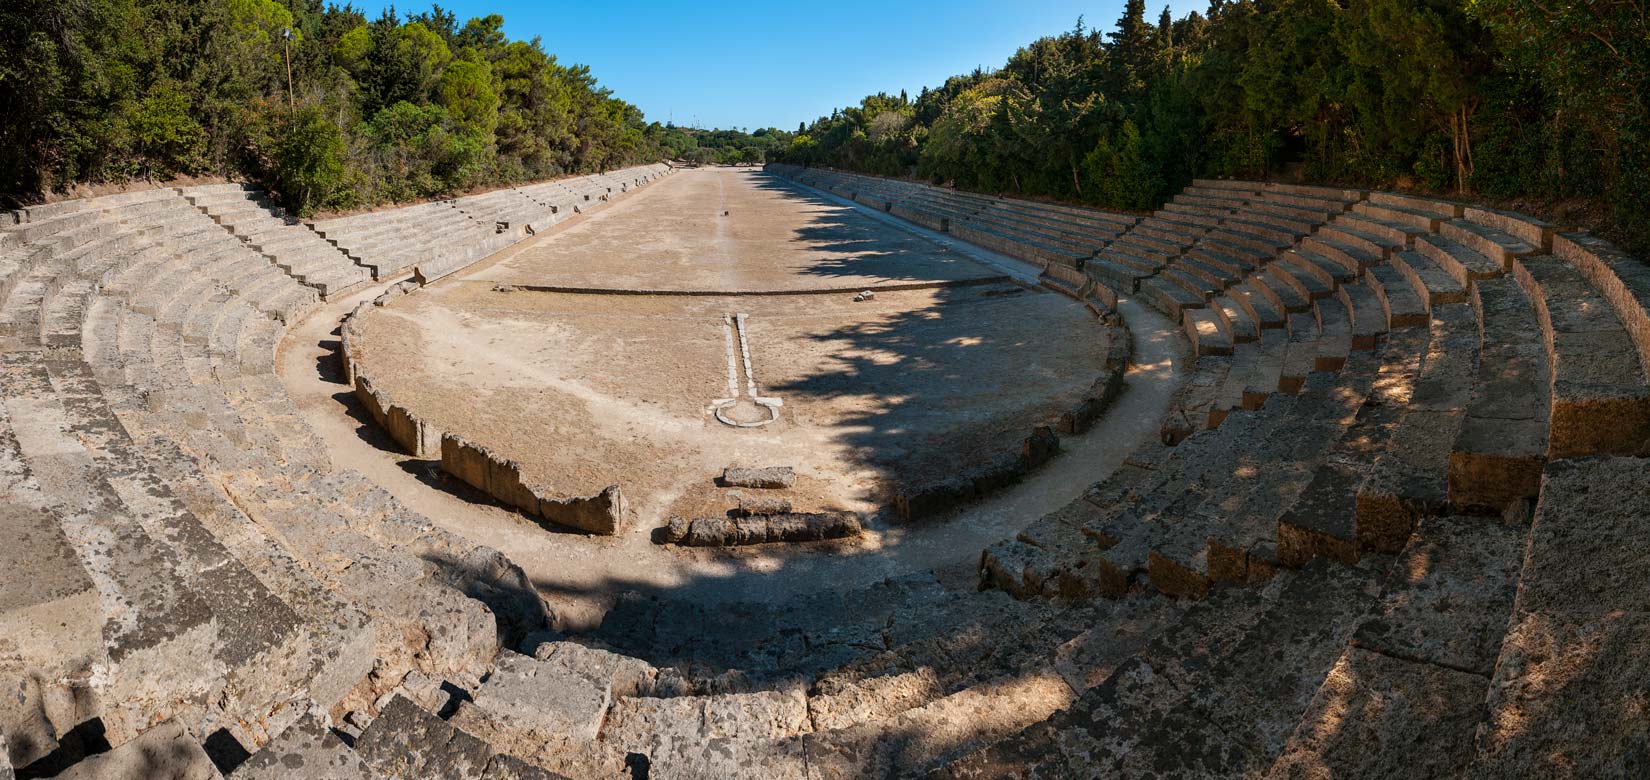 Historické Stadium pod Apollonovým chrámem zrekonstruované v období italské správy ostrova i dnes nabízí svůj ovál k proběhnutí. Poseďte a podumejte nad věčností kamene.